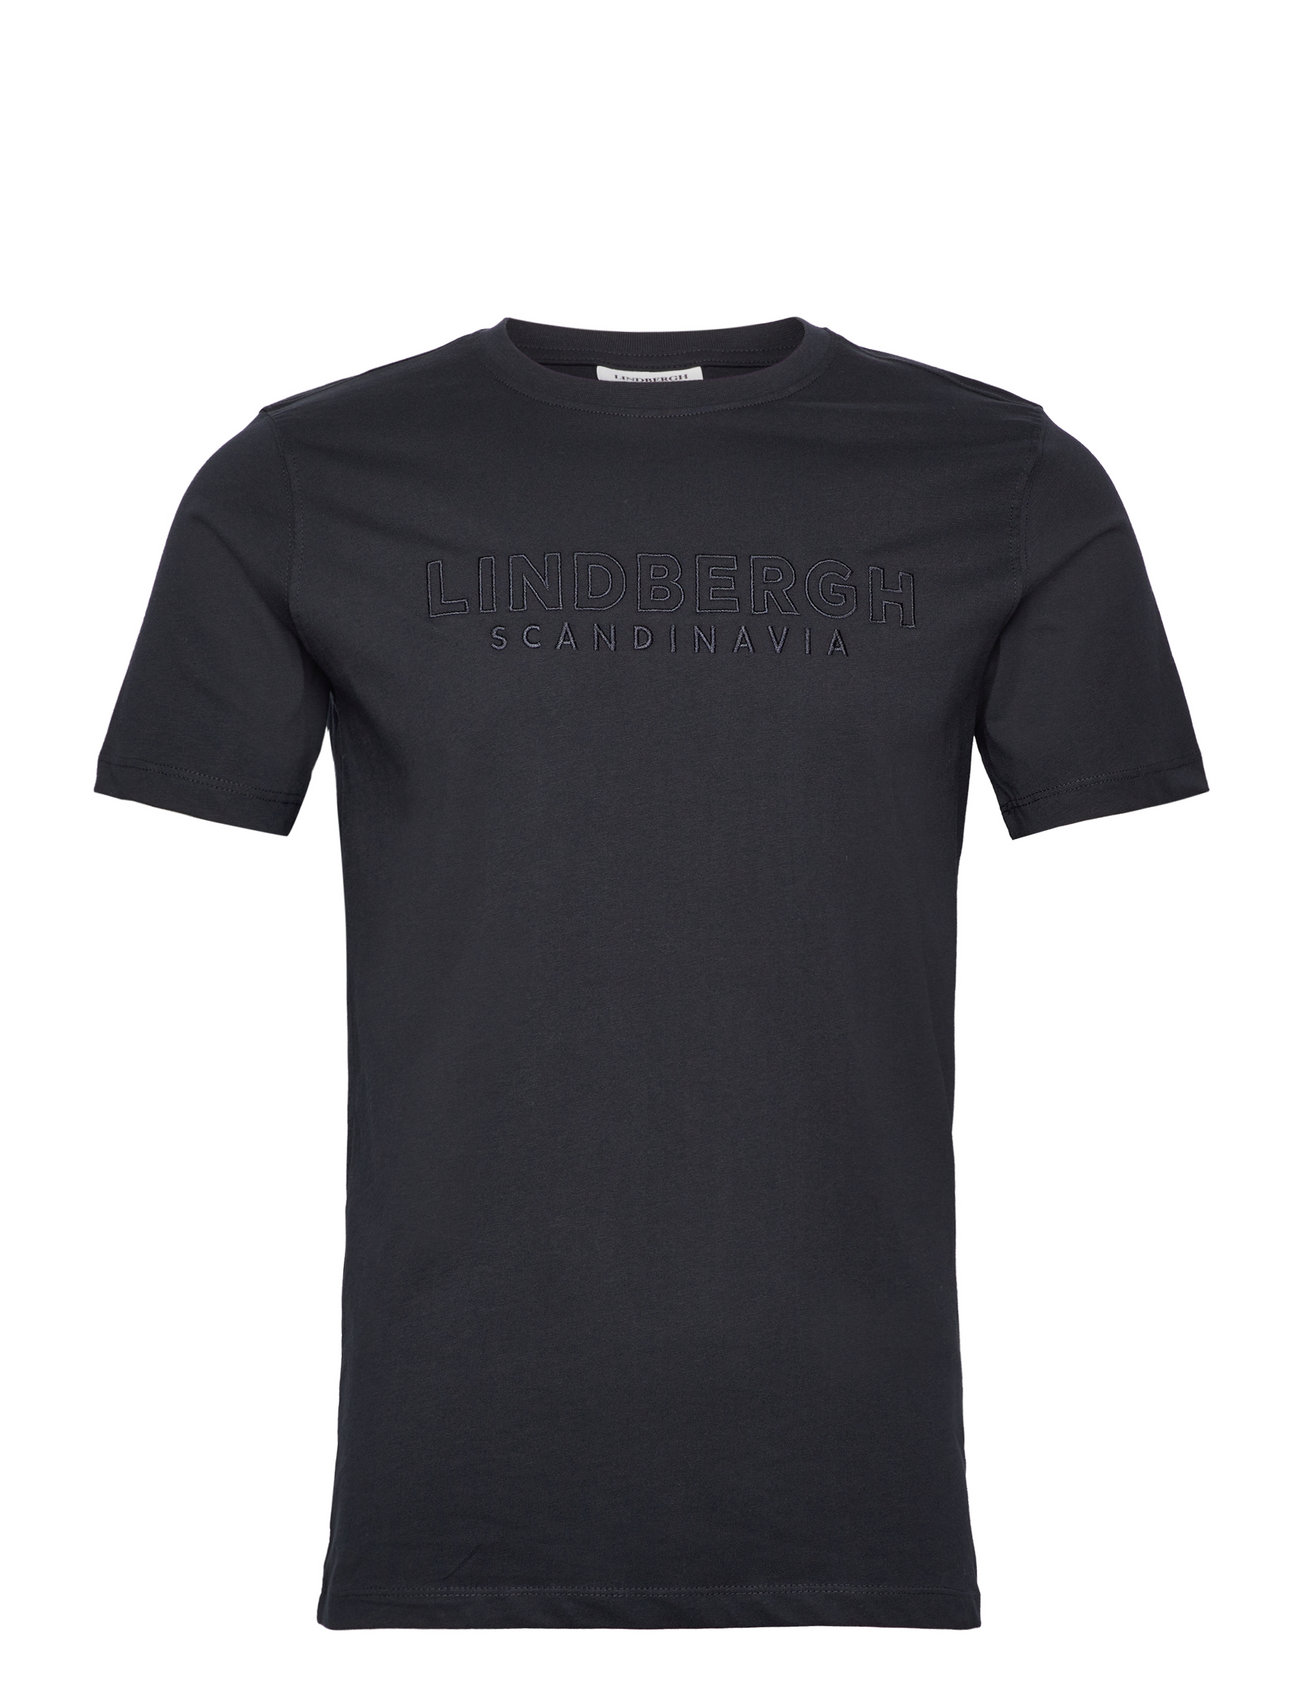 Brand Embroidery Tee S/S Tops T-Kortærmet Skjorte Navy Lindbergh